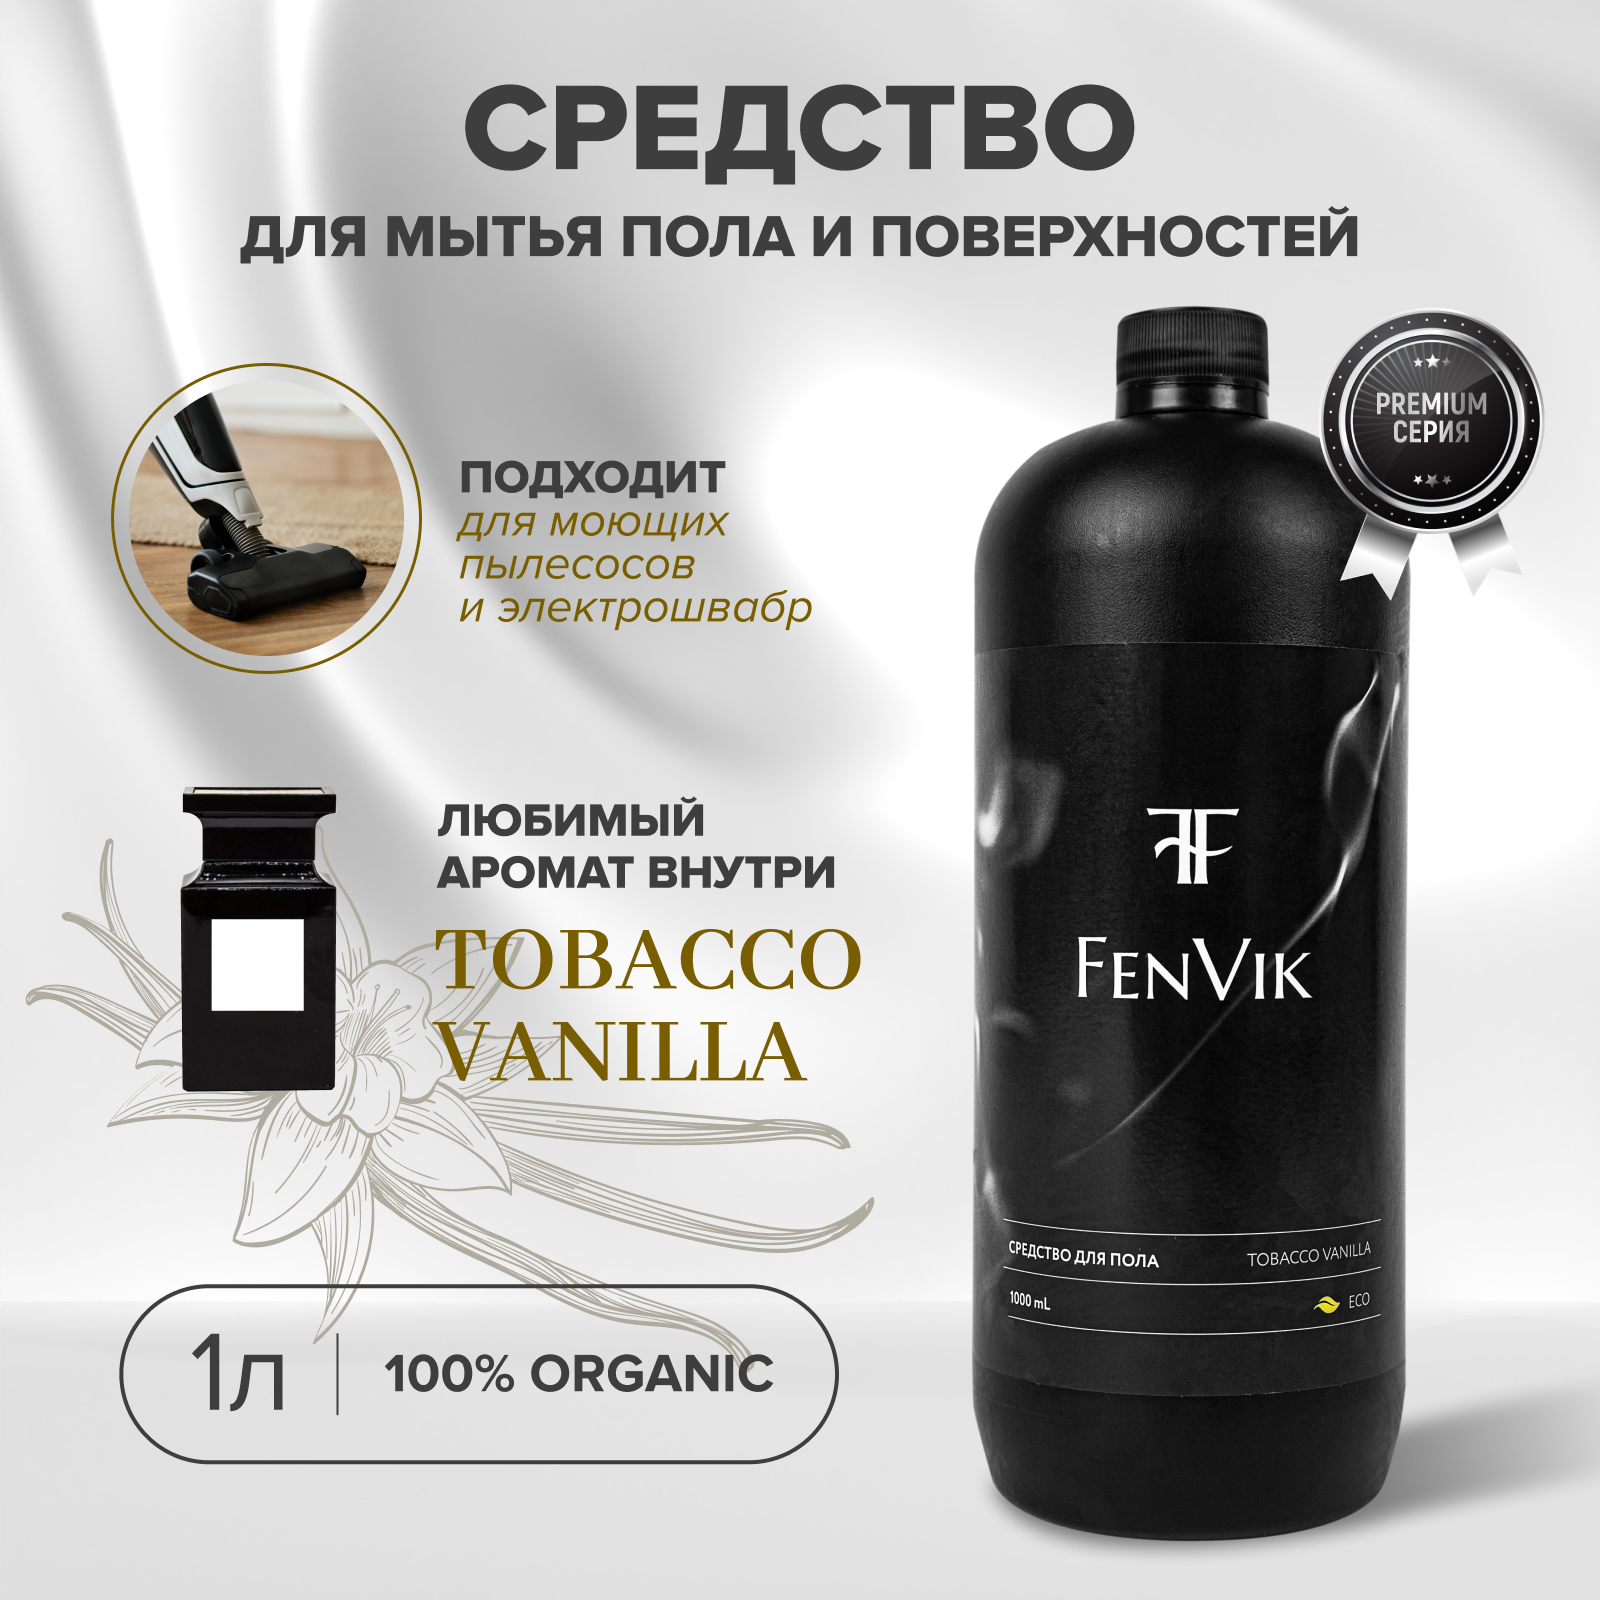 Парфюмированное средство для мытья пола и поверхностей с ароматом табак ваниль, 1 литр, бренд FenVik